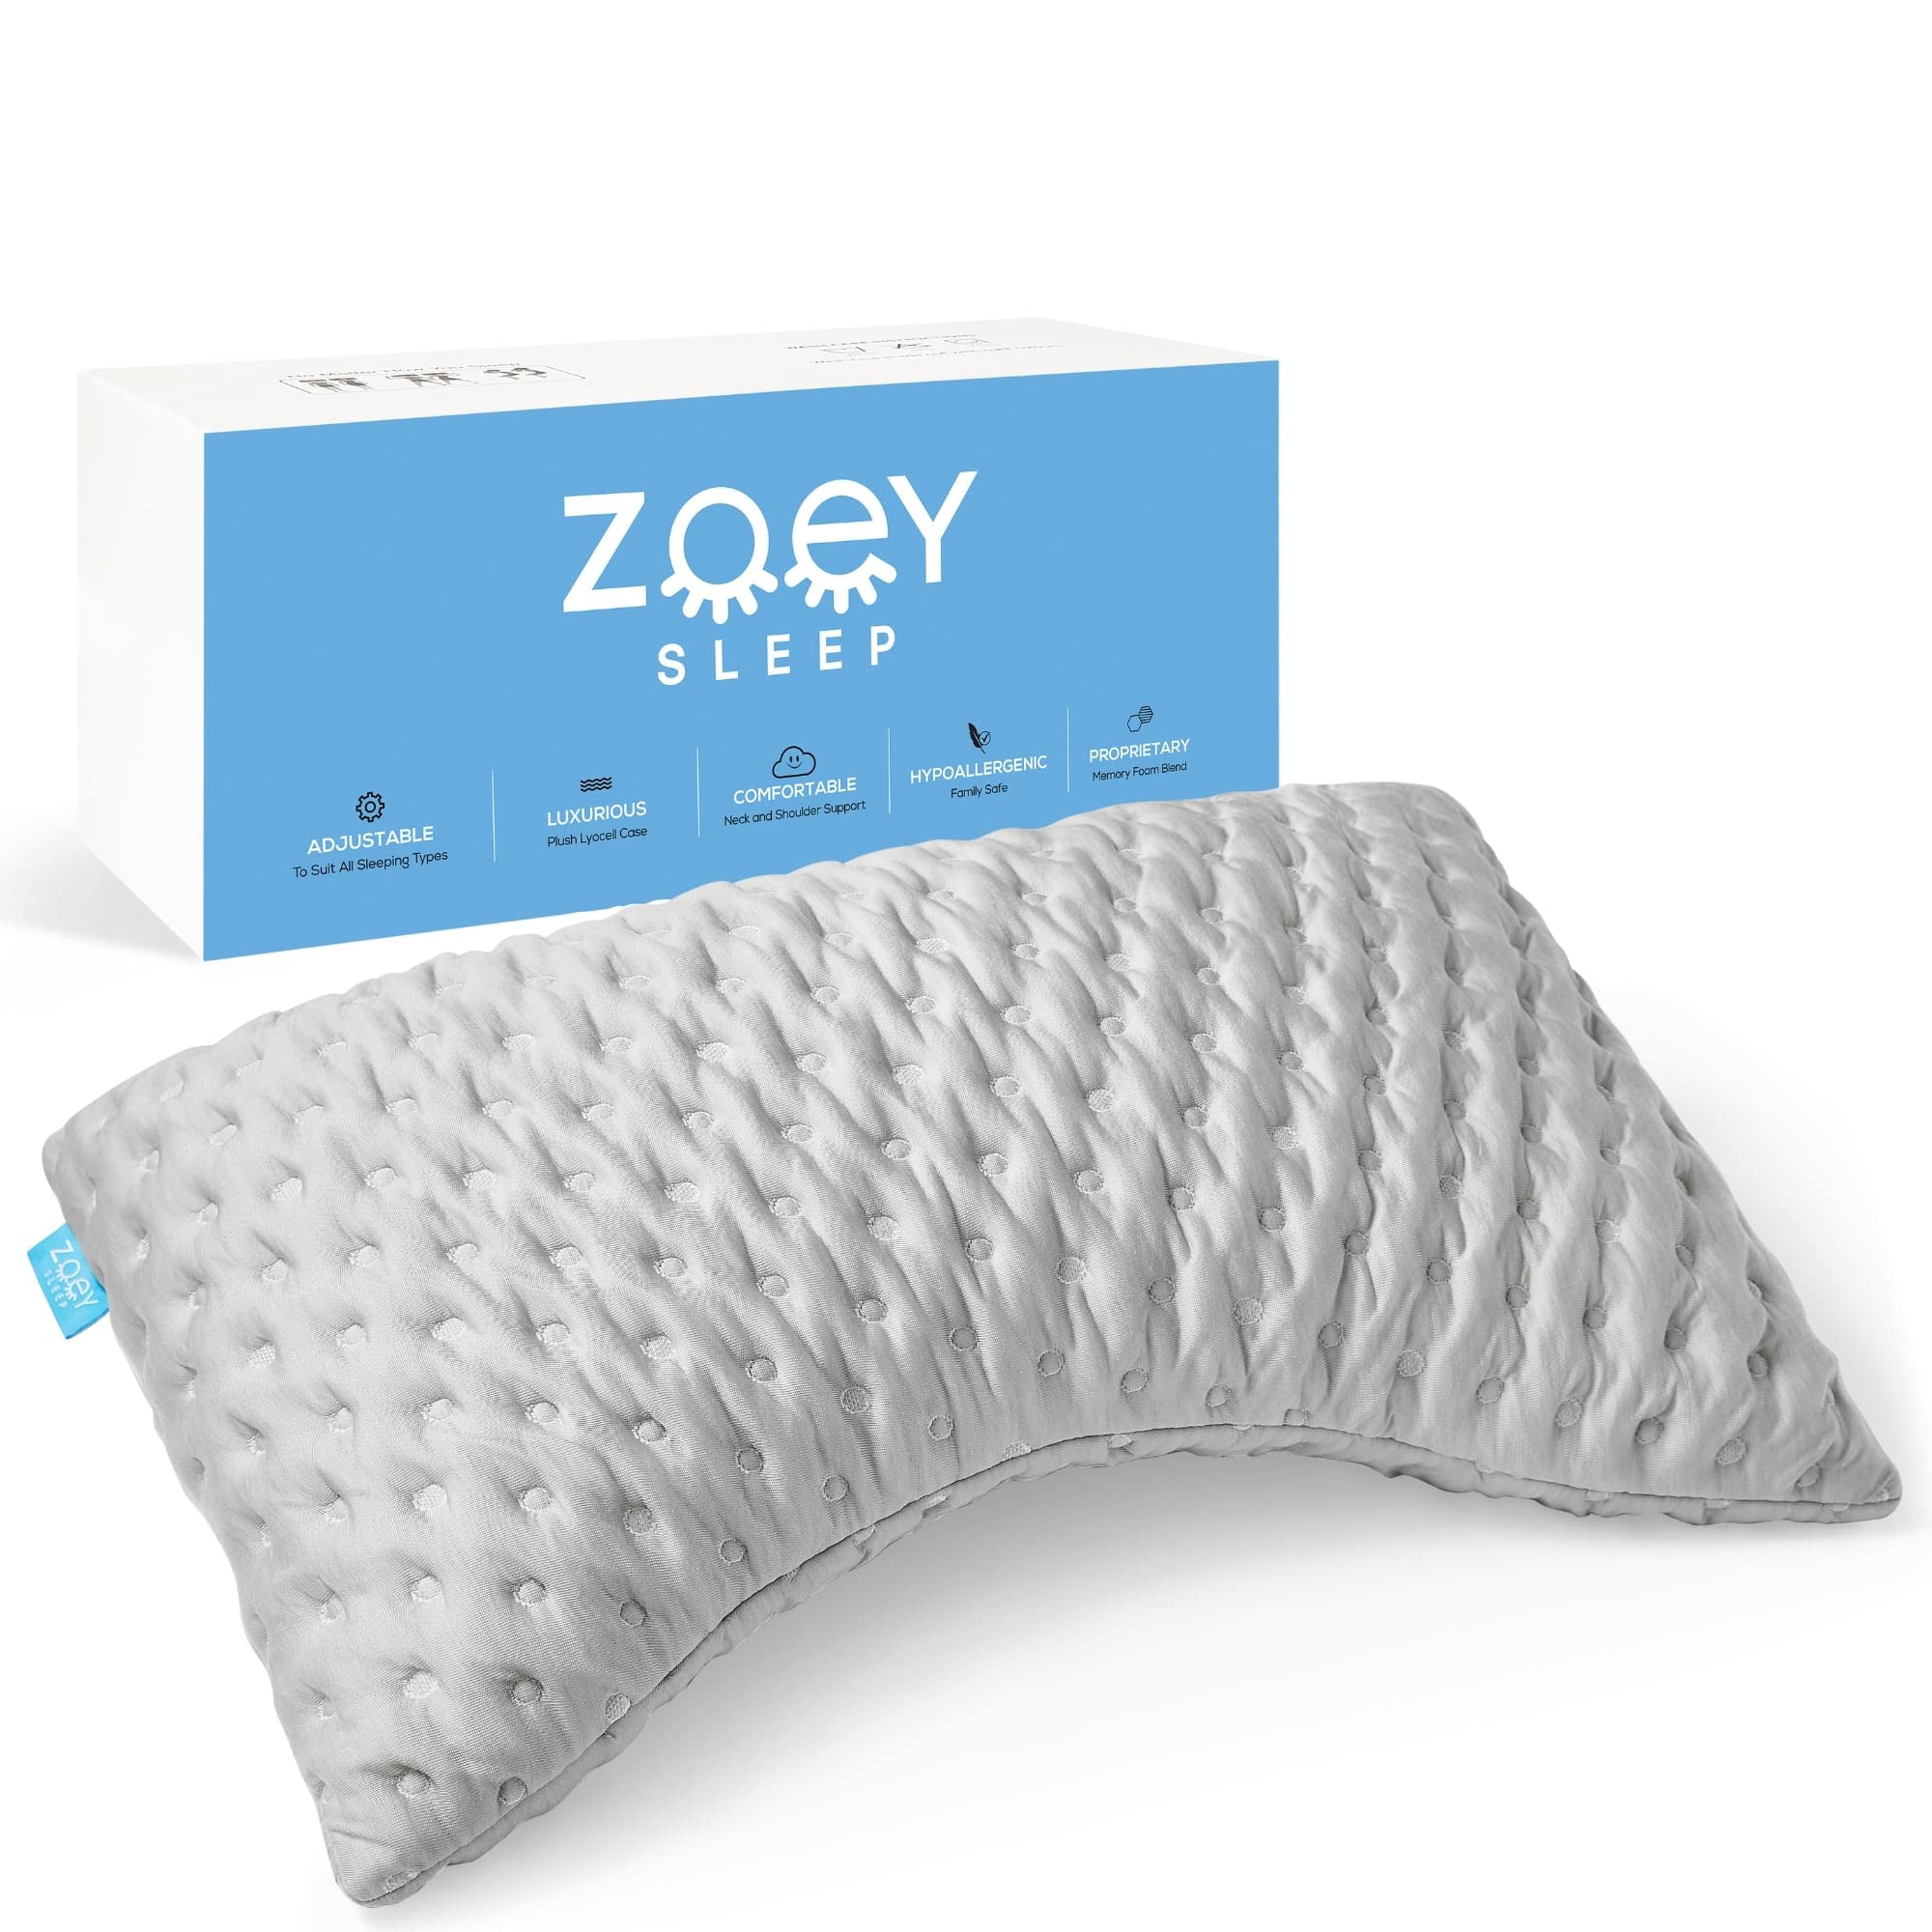  Zoey Sleep साइड स्लीप पिलो - सोने के लिए मेमोरी फोम बेड पिलो - 100% एडजस्टेबल सपोर्टिव...